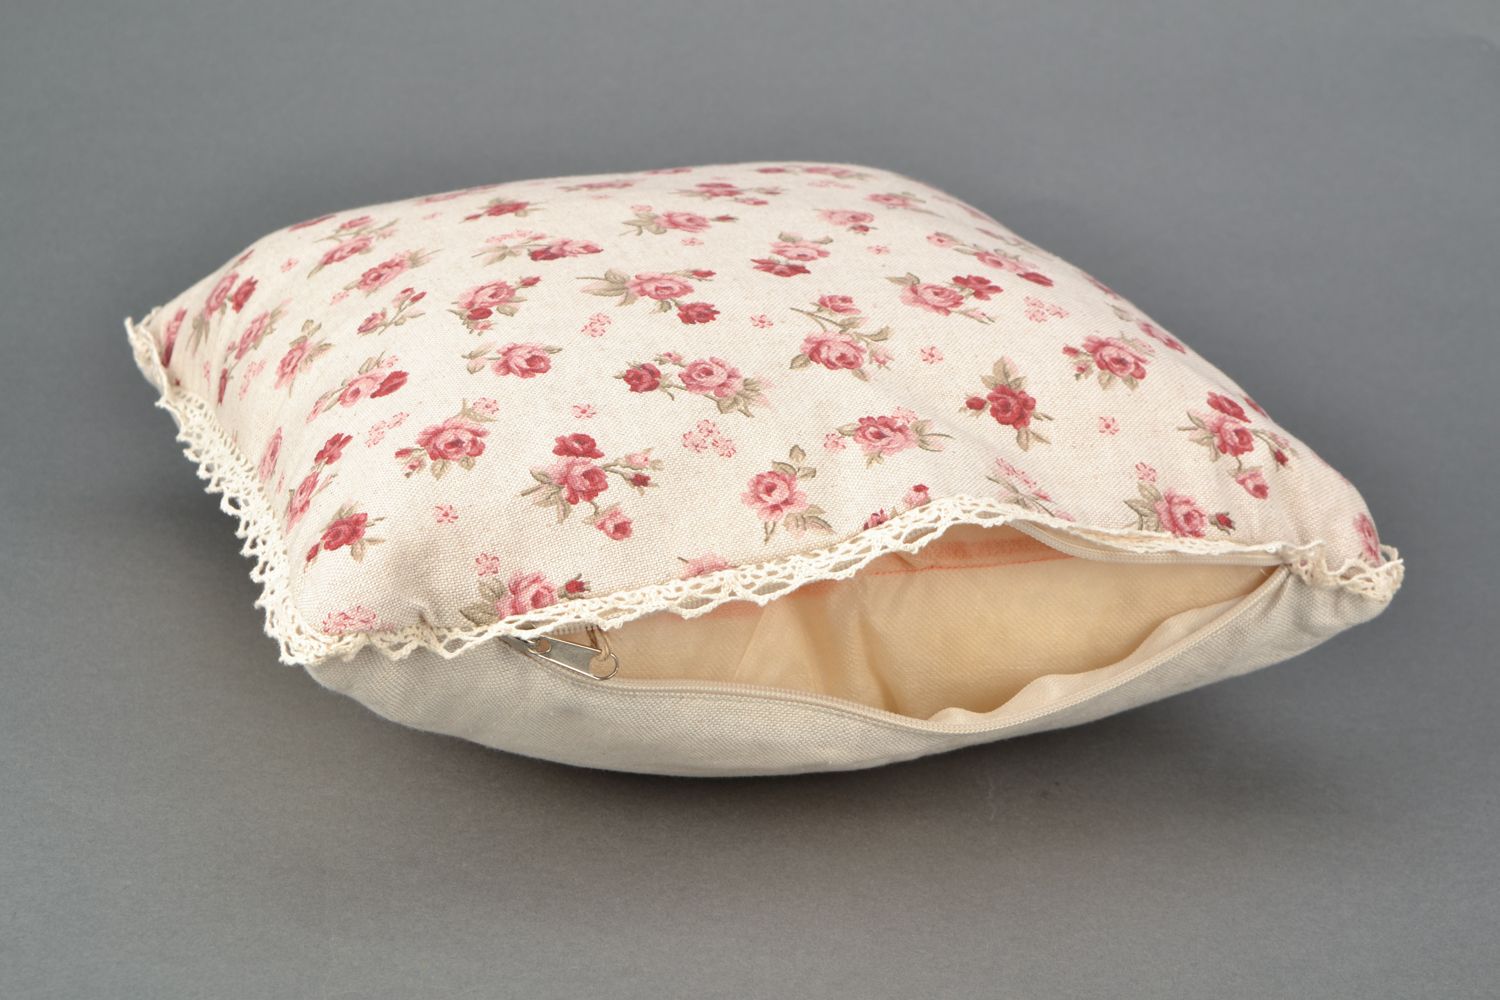 Мягкая диванная подушка из хлопка и полиамида с хлопчатобумажным кружевом фото 4